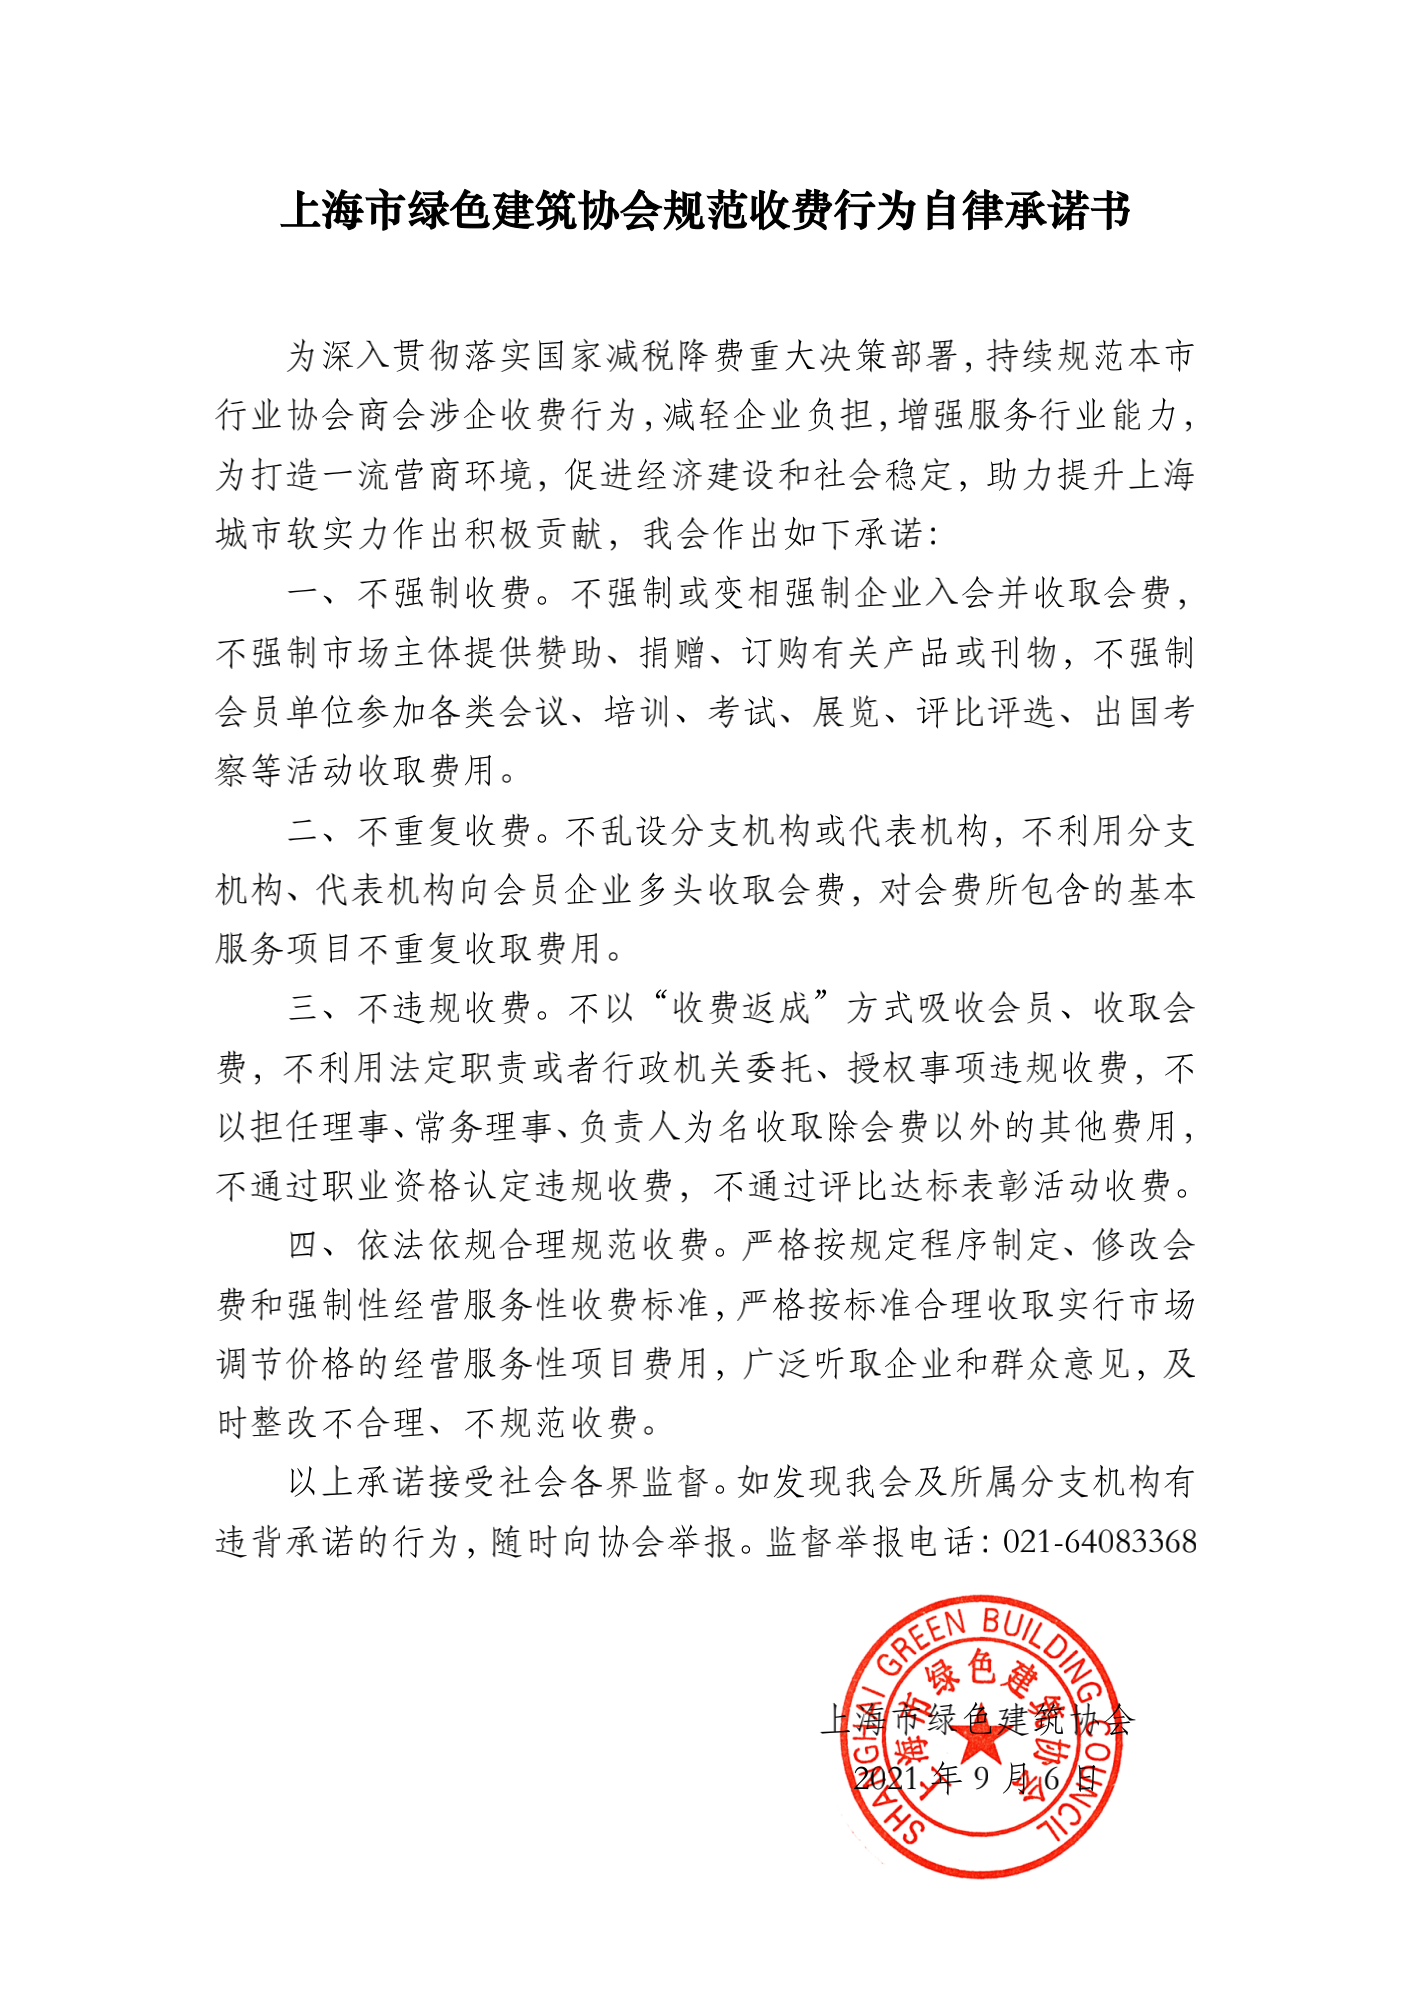 上海市绿色建筑协会规范收费行为自律承诺书